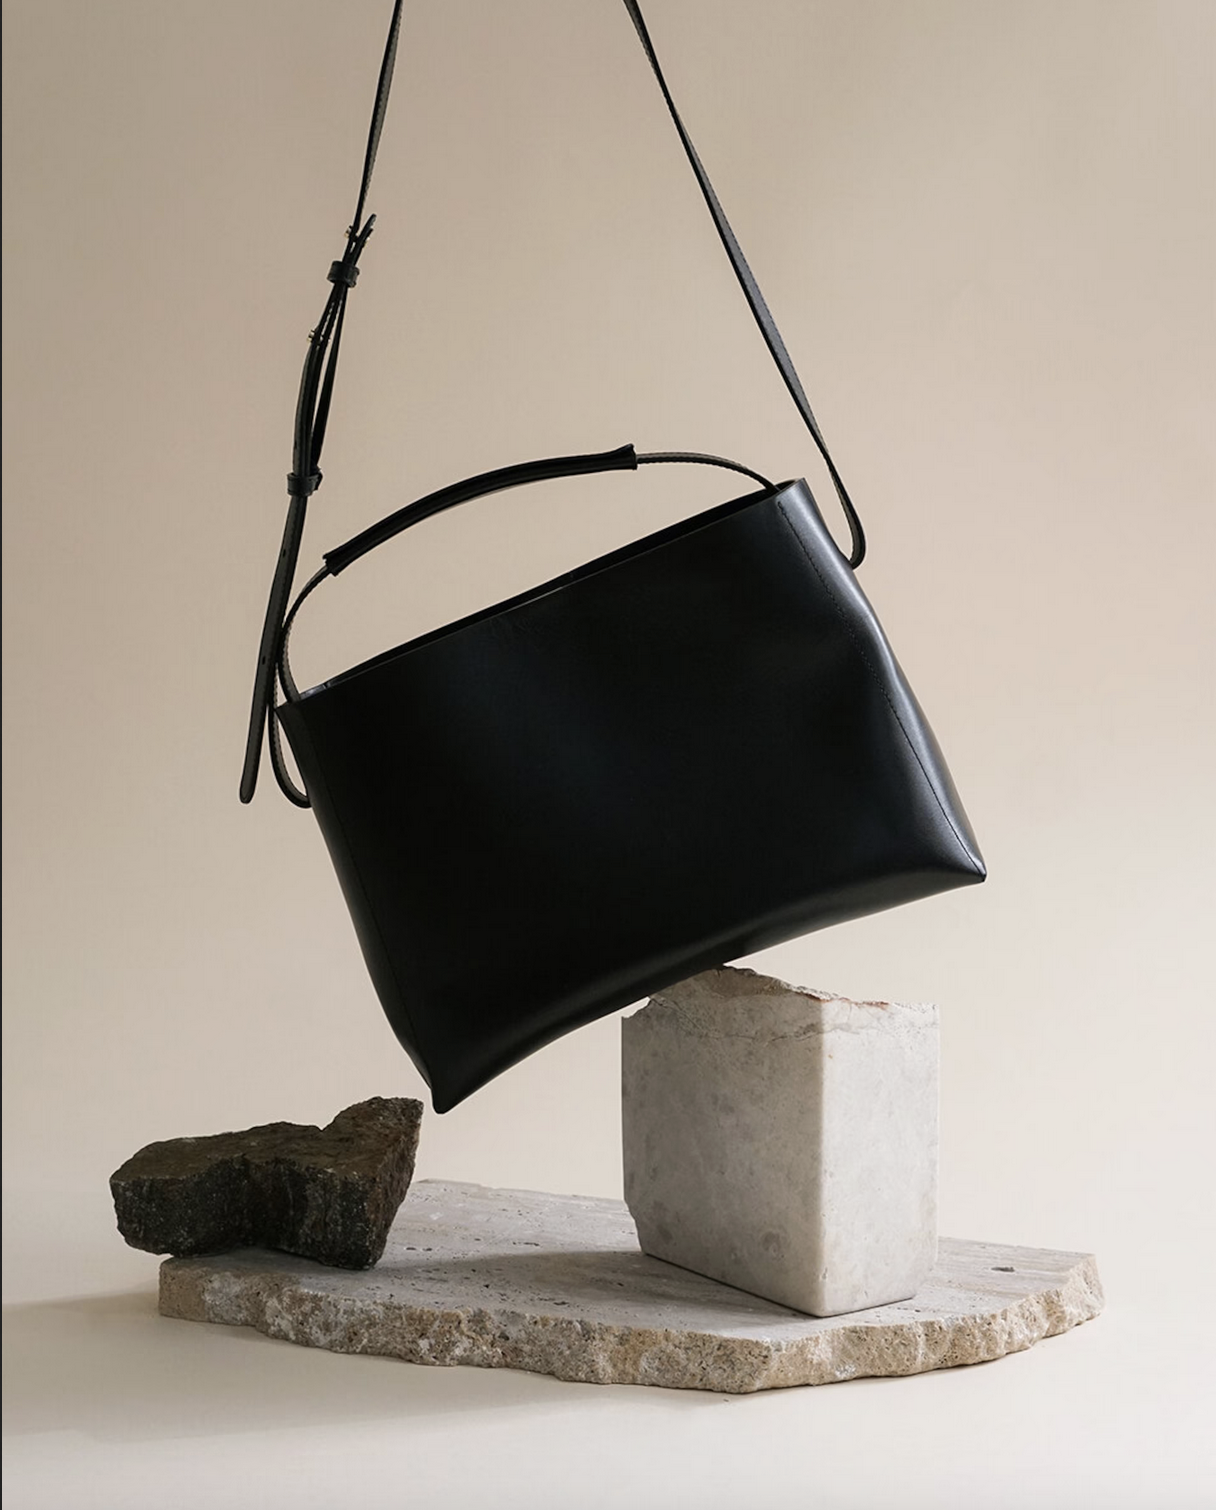 Hedda Grande Handbag Black Leather Black